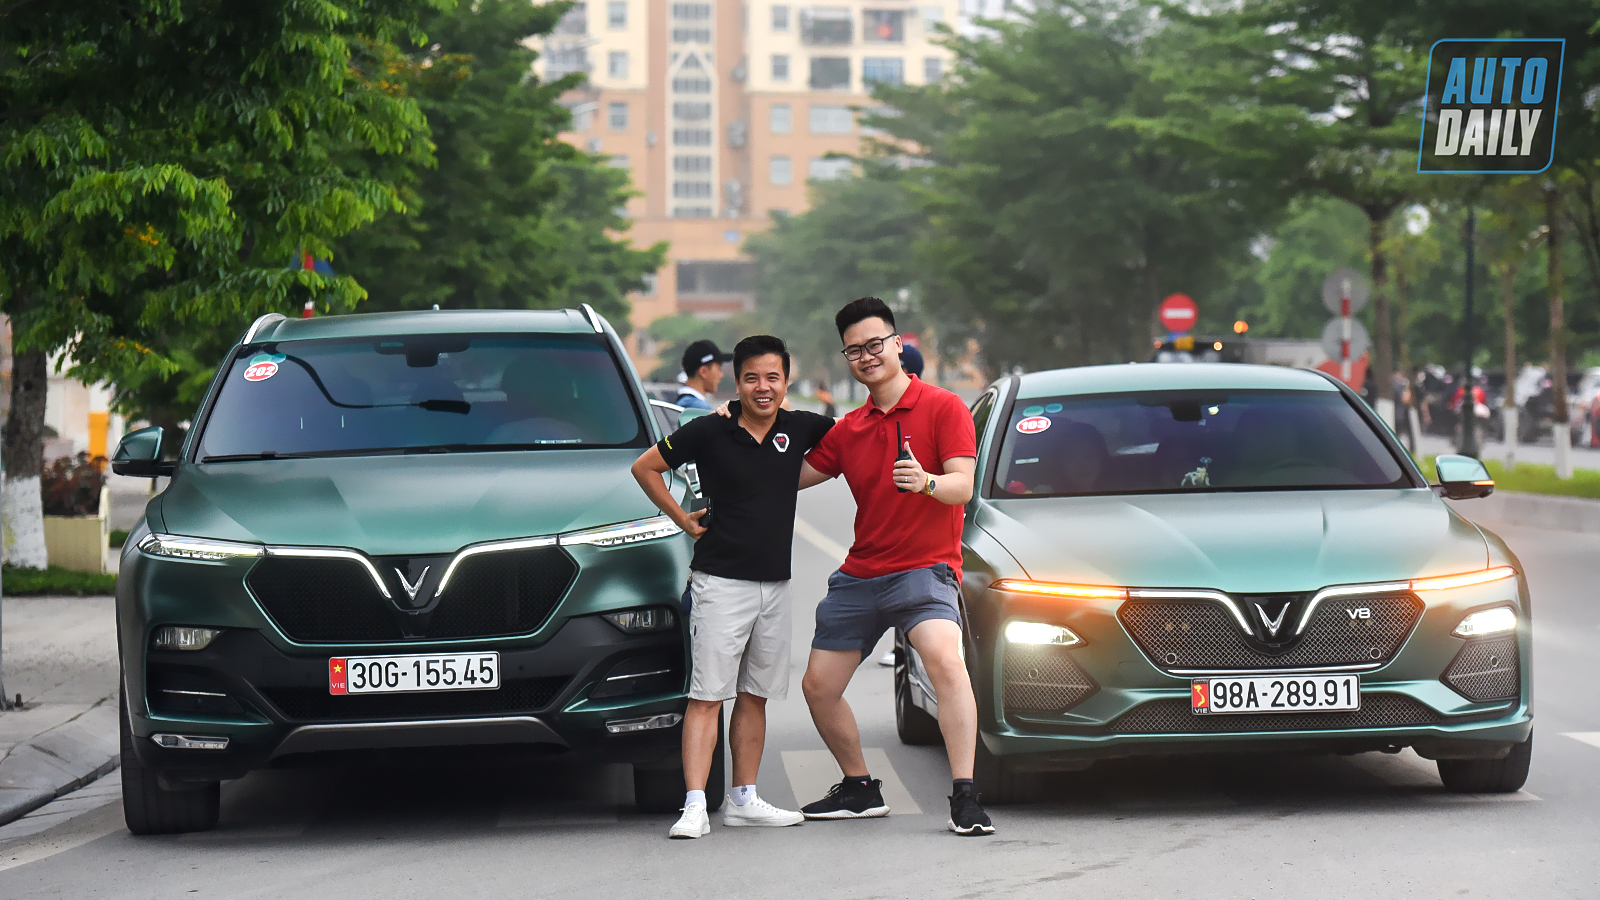 Chùm ảnh gần 60 xe VinFast Lux tại Hà Nội xuất phát Offline 3 miền tại Hội An dsc-6164-copy.jpg